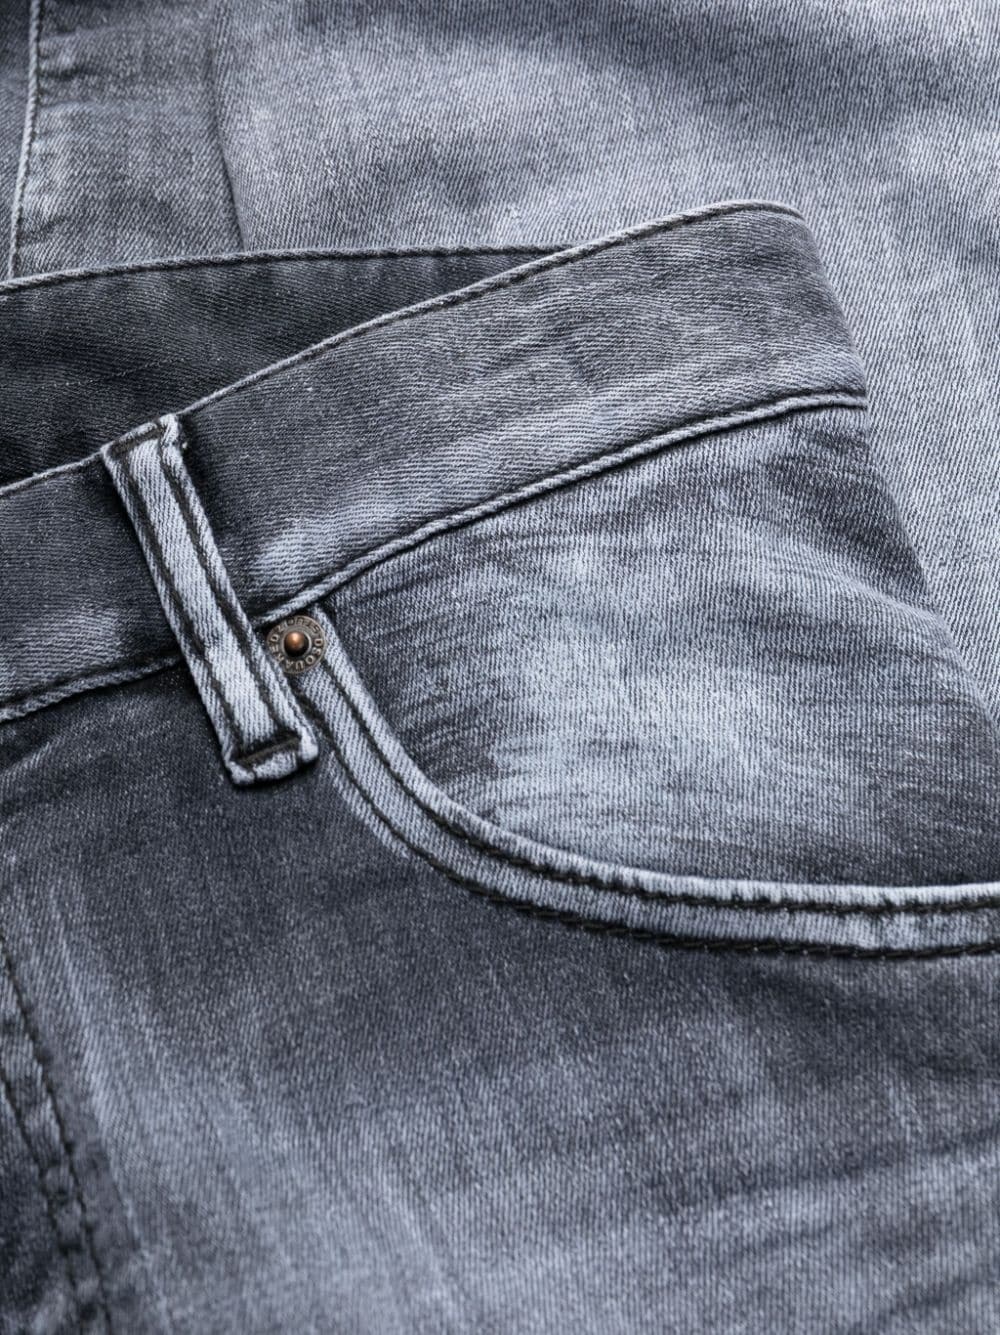 Cotton jeans - 2